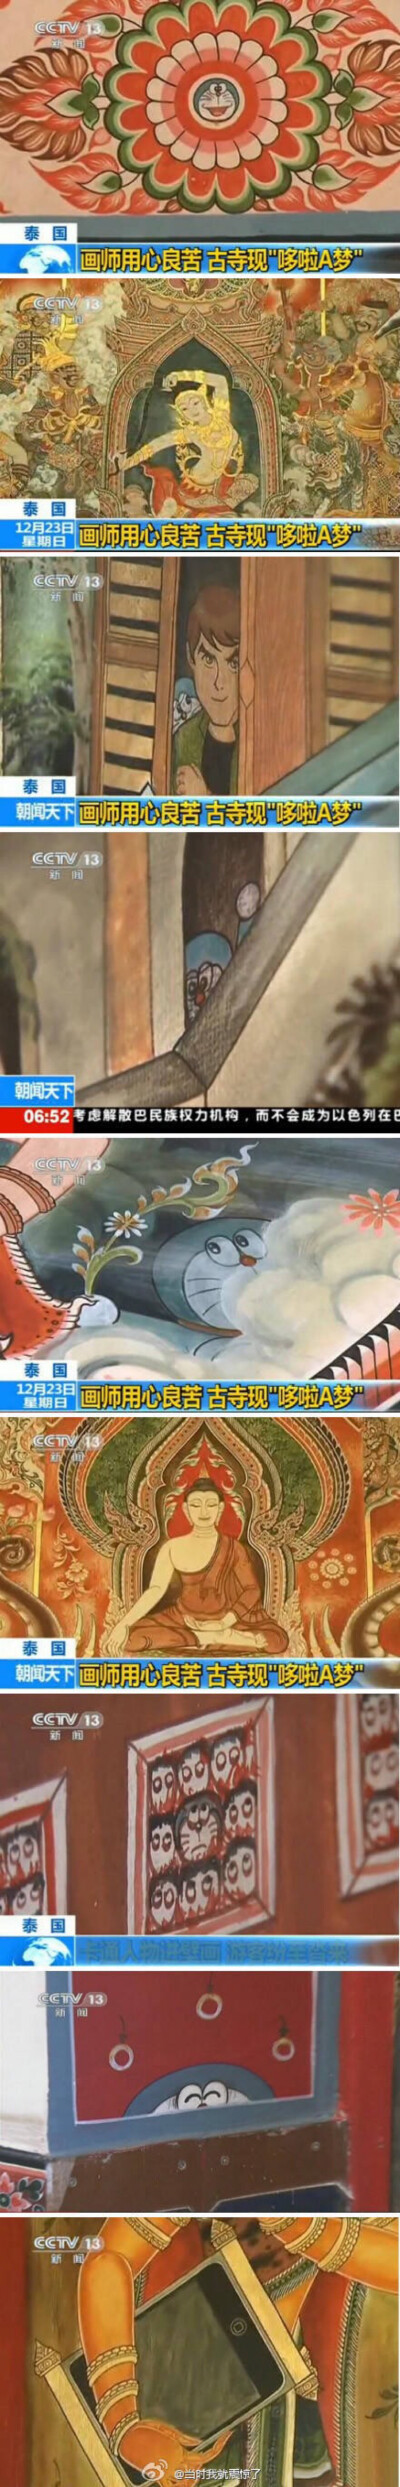 央视播了一则有趣的新闻：泰国一古寺请画师画壁画，画师爱猫，于是偷偷在壁画里画入多拉A梦，也就是机器猫。最后连他自己也记不得画了多少，藏在哪里。古寺由此吸引大批游客前往寻找多啦A梦。